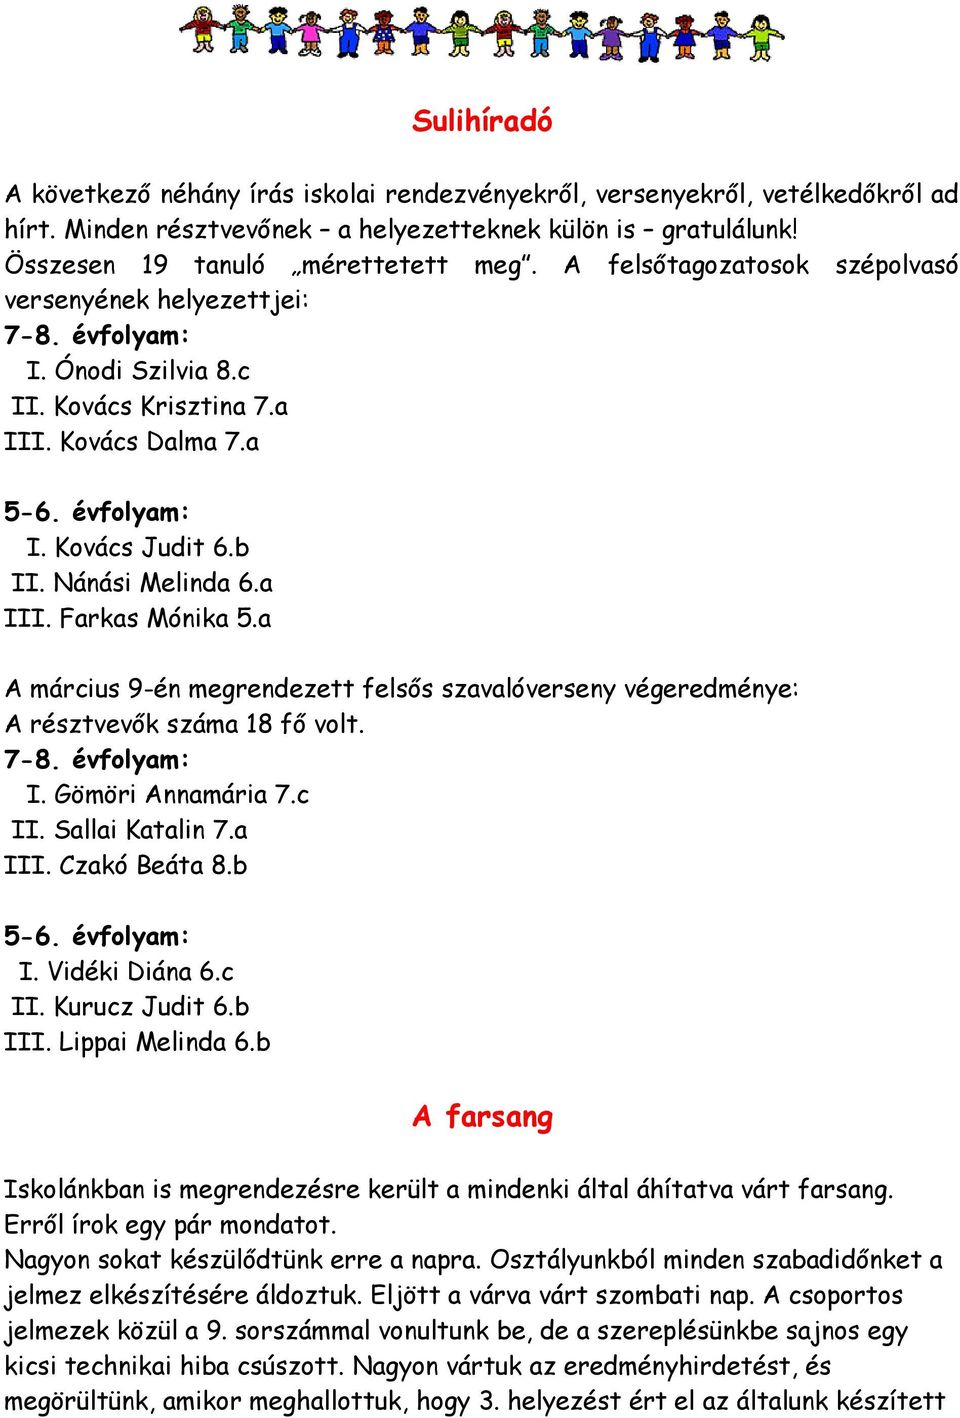 a III. Farkas Mónika 5.a A március 9-én megrendezett felsős szavalóverseny végeredménye: A résztvevők száma 18 fő volt. 7-8. évfolyam: I. Gömöri Annamária 7.c II. Sallai Katalin 7.a III. Czakó Beáta 8.